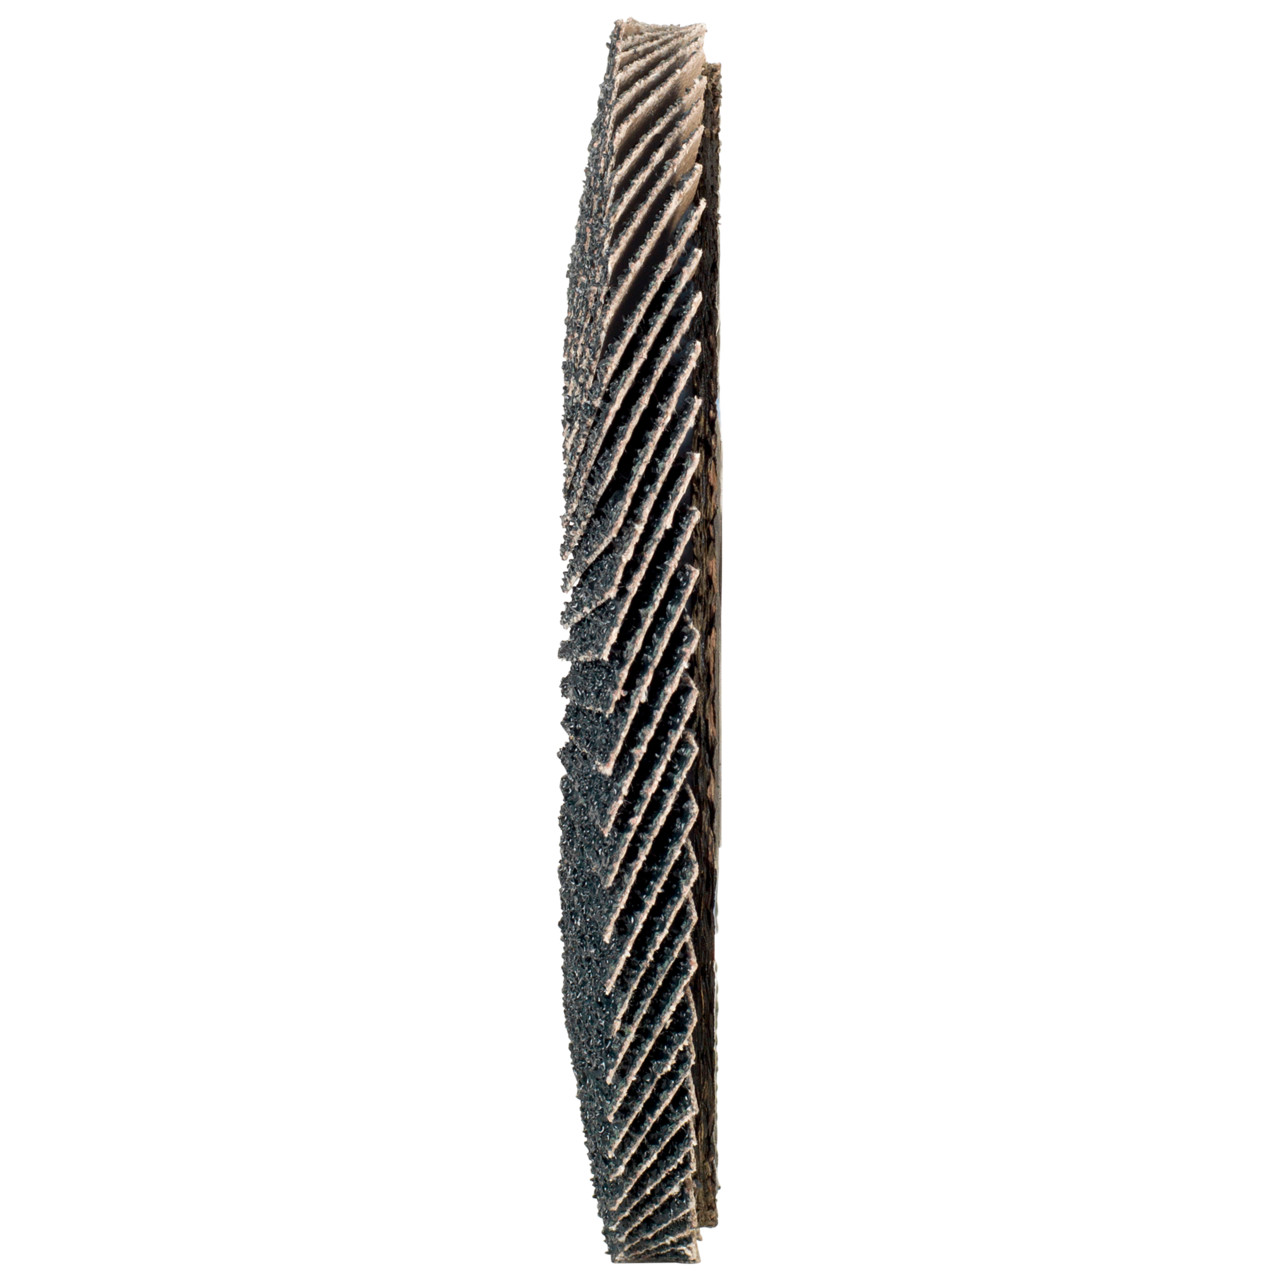 Tyrolit Arandela dentada DxH 125x22,2 2en1 para acero y acero inoxidable, P60, forma: 28A - versión recta (versión con cuerpo de soporte de fibra de vidrio), Art. 668693